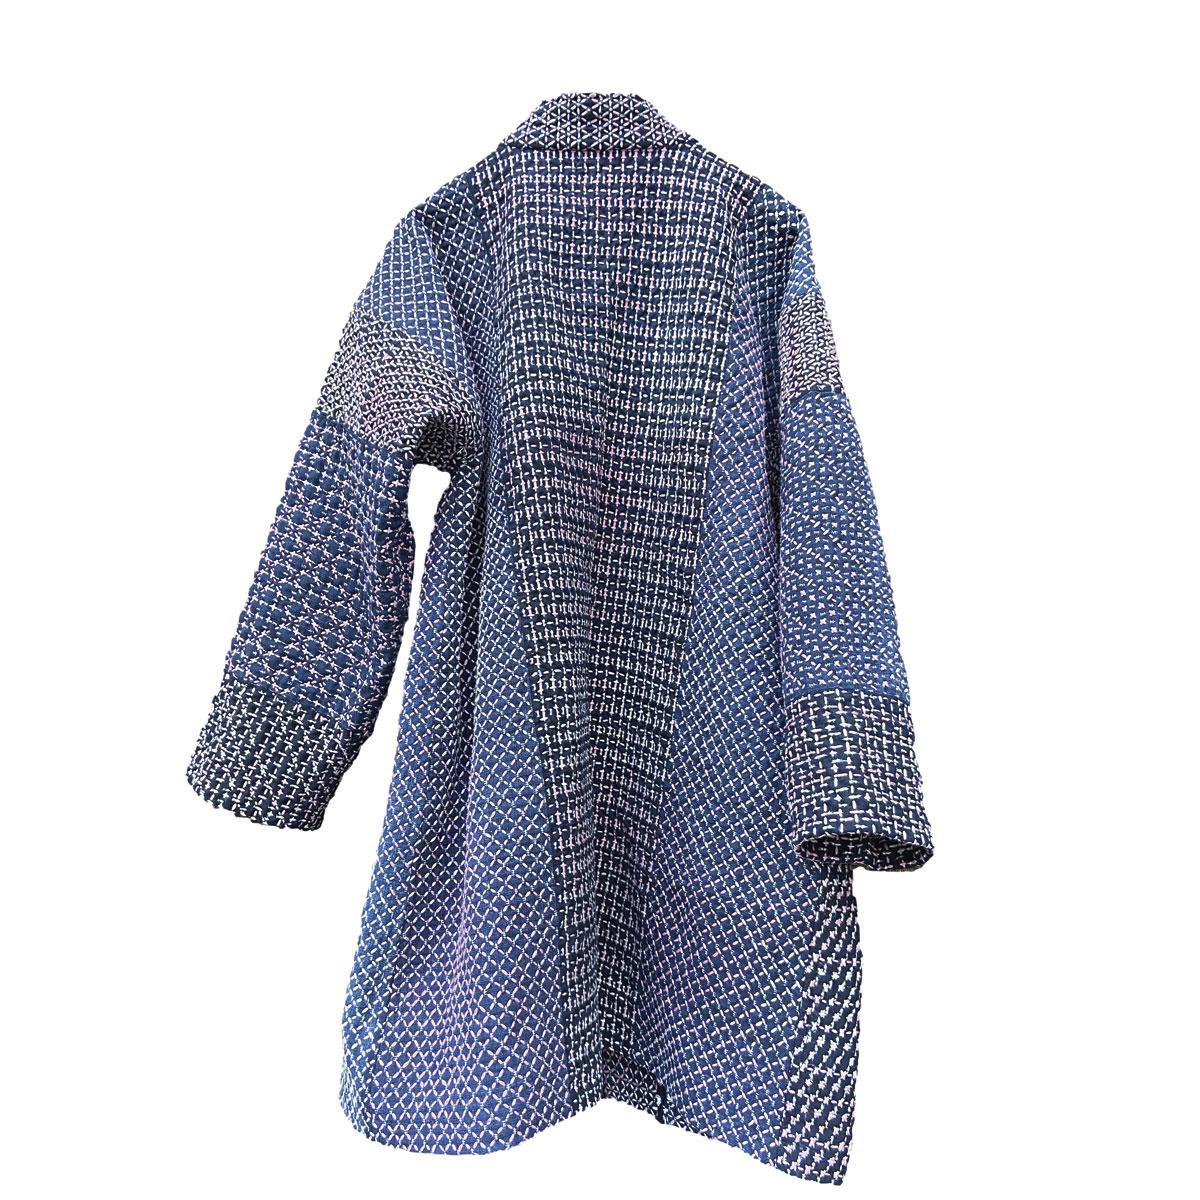 Verschillende geometrische sashiko-patronen bedekken een hele jas.